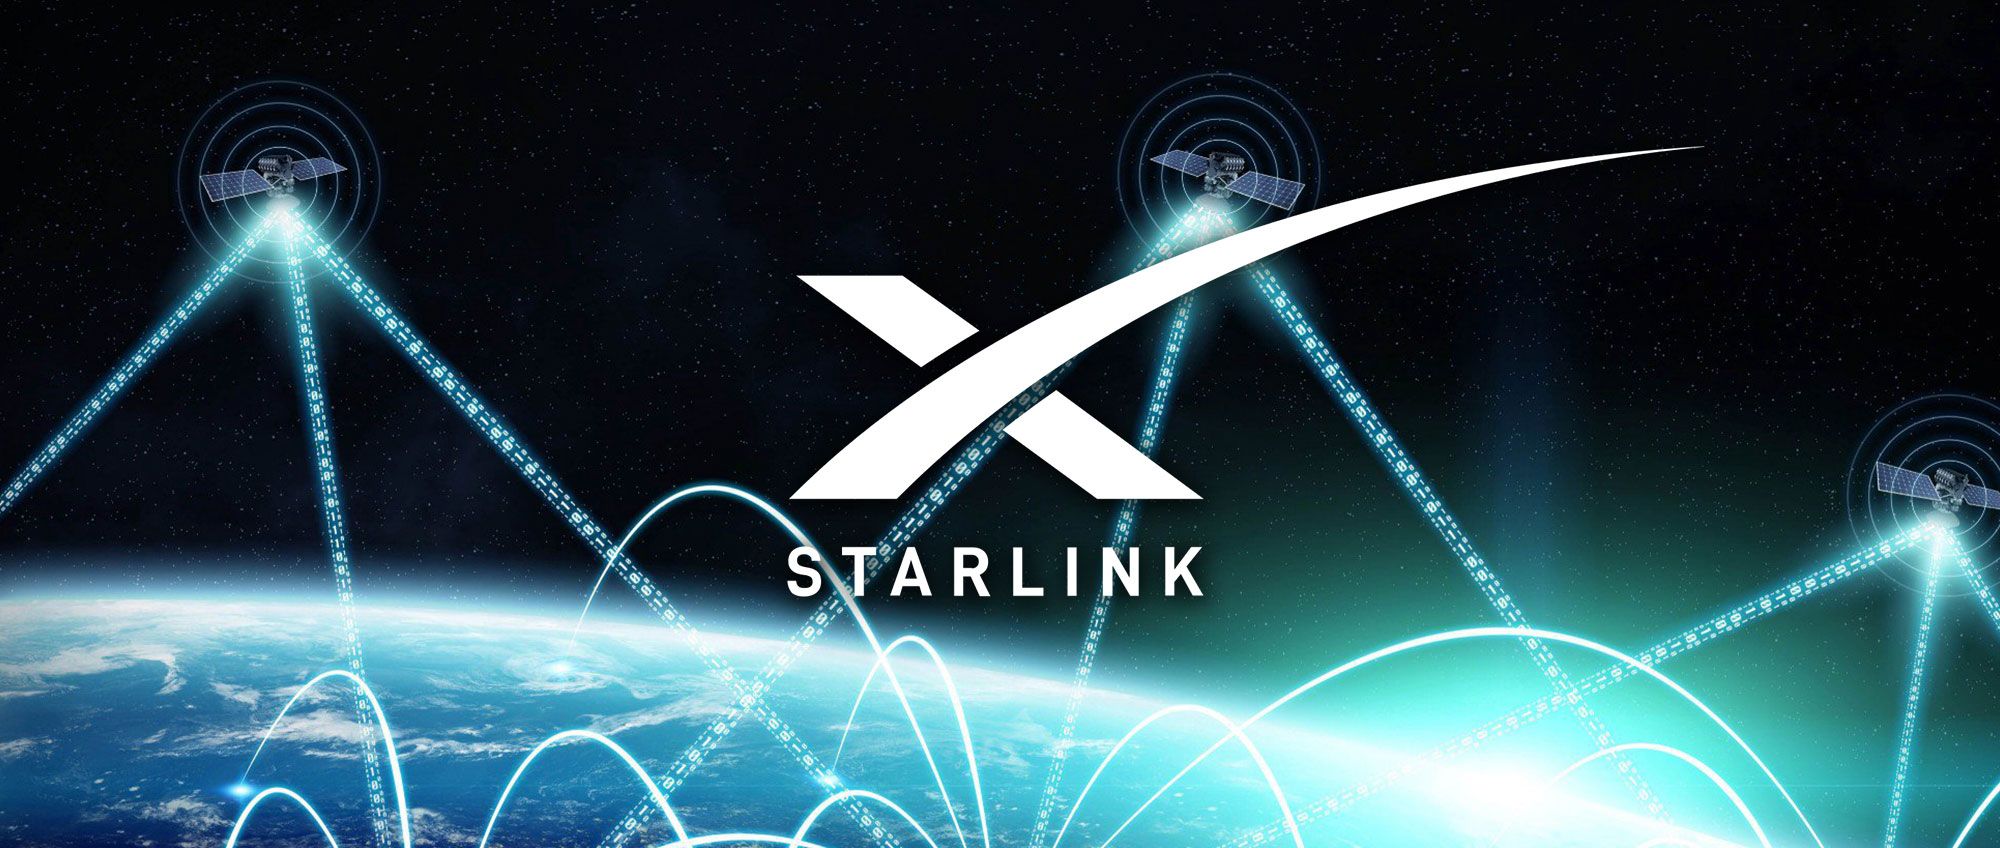 <i>Starlink </i>передал картинки с телефона